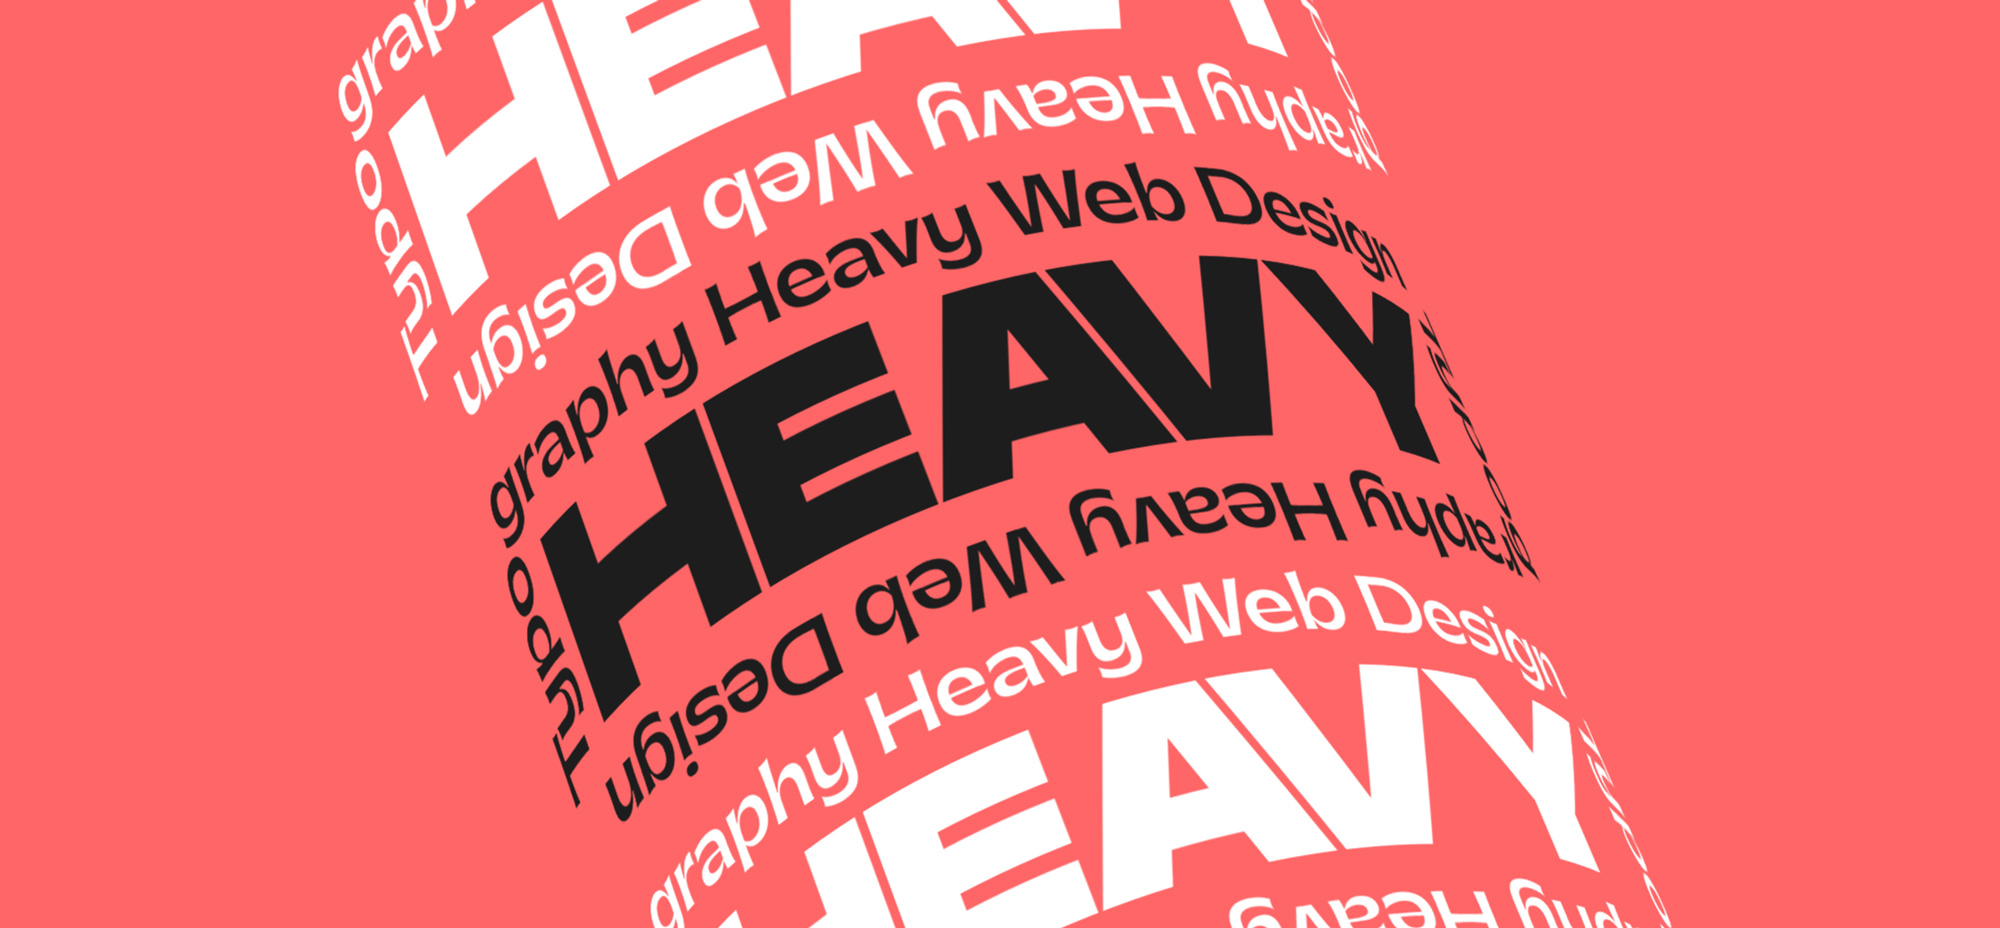 Typography-Heavy Web Design